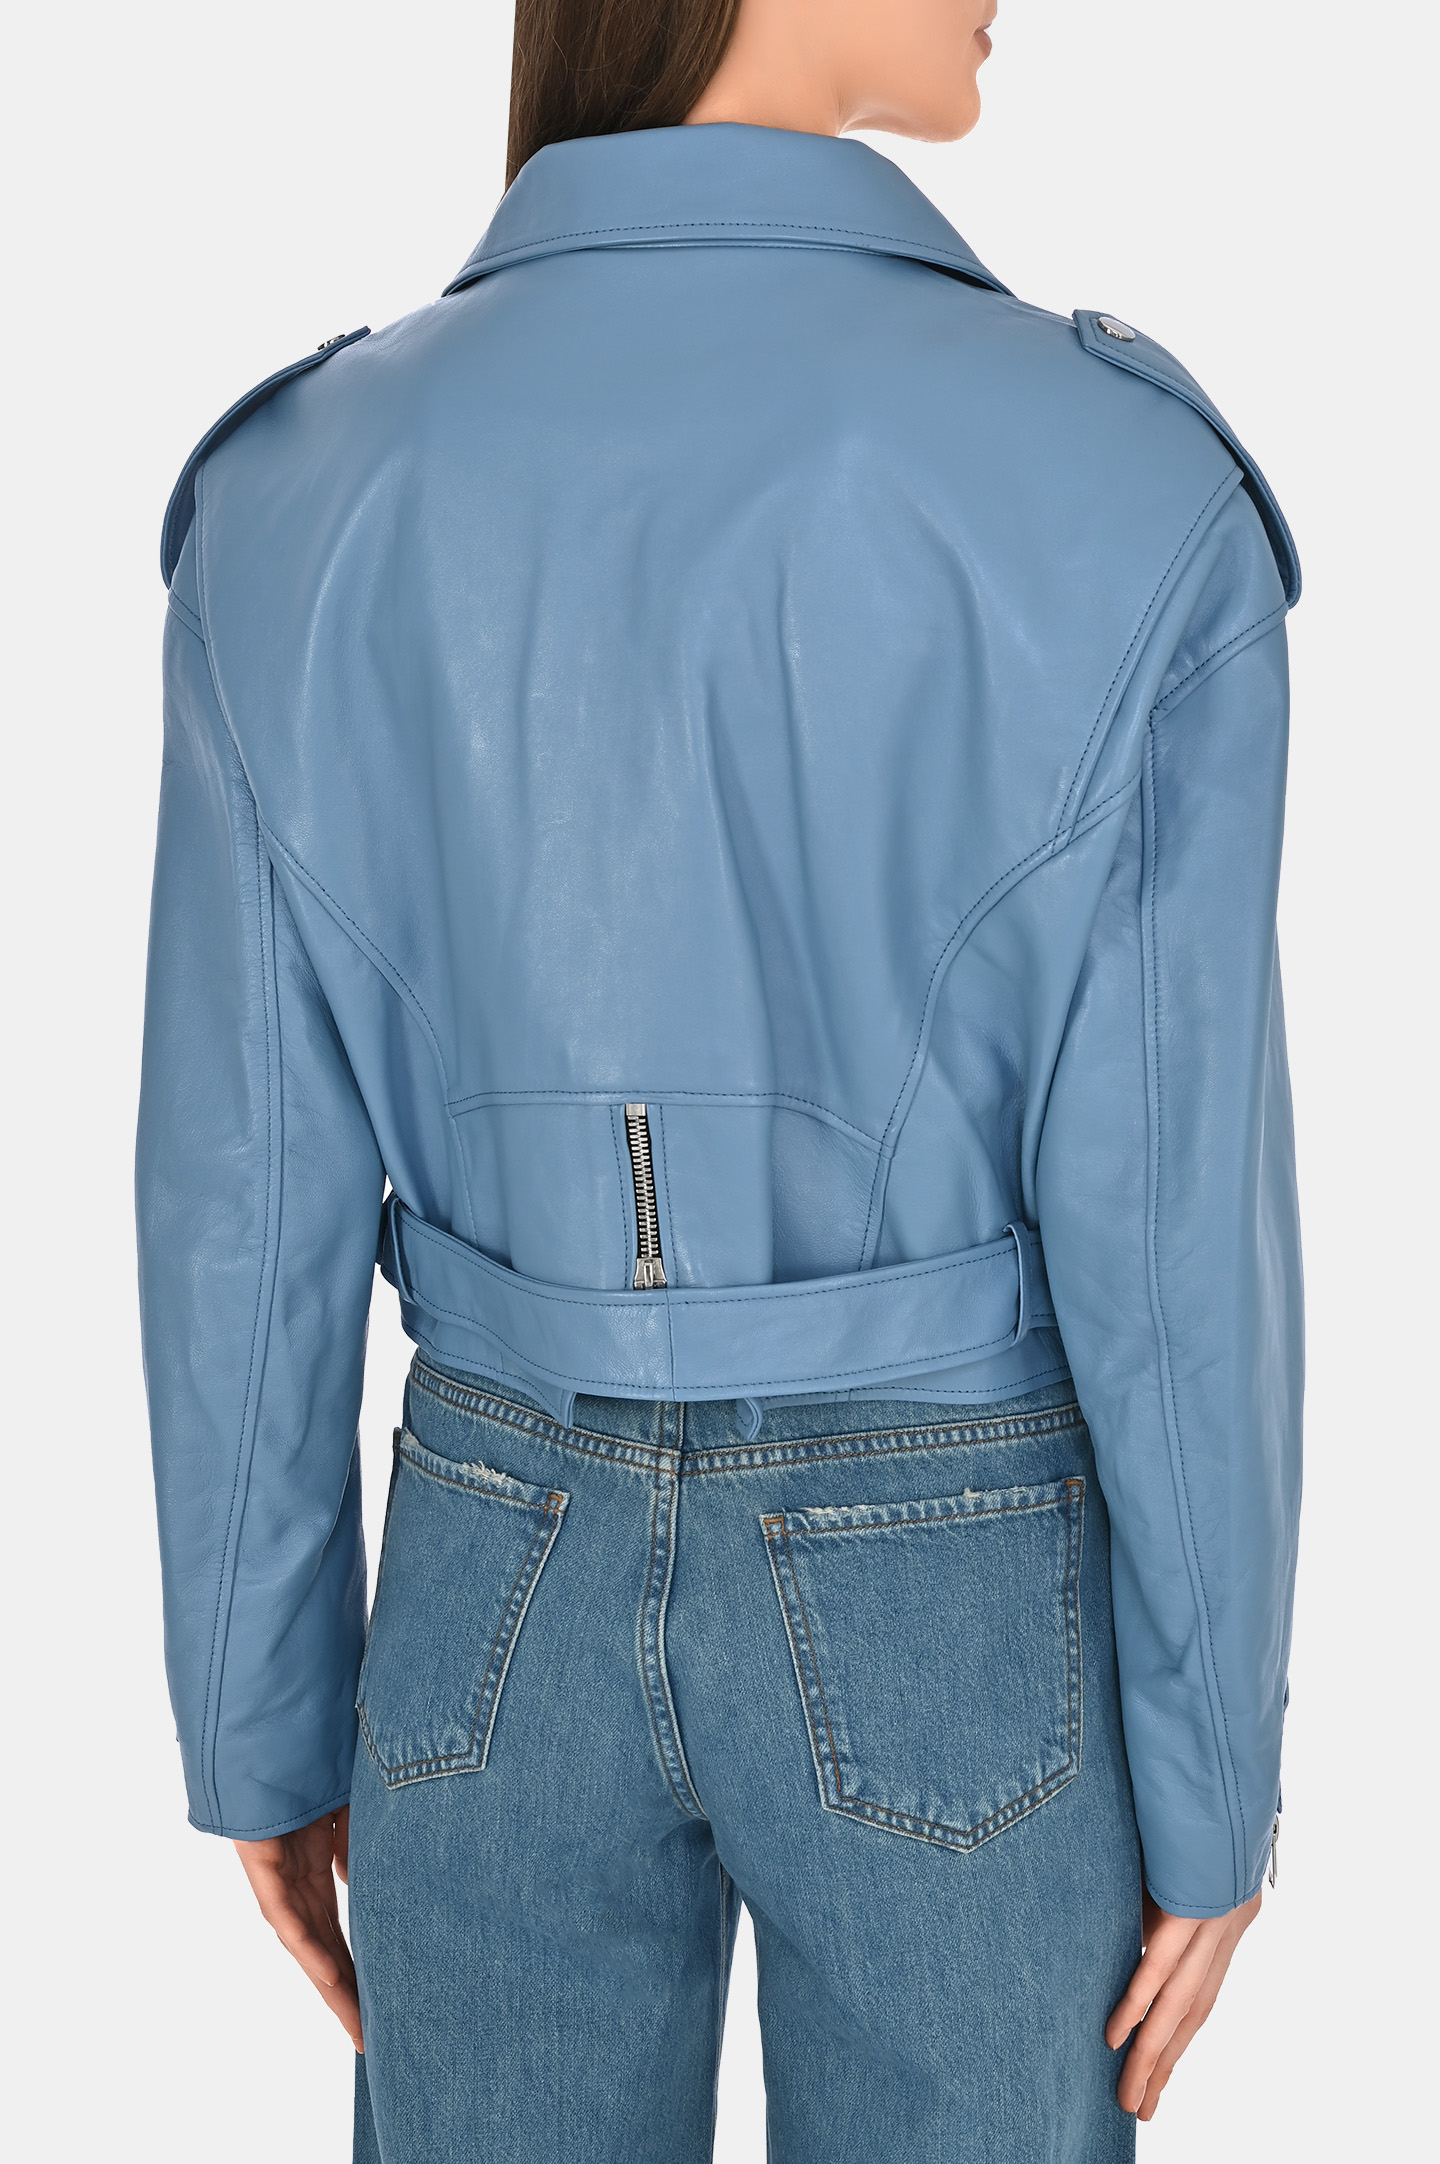 Кожаная куртка-косуха JACOB LEE WLJ16233JB, цвет: Голубой, Женский